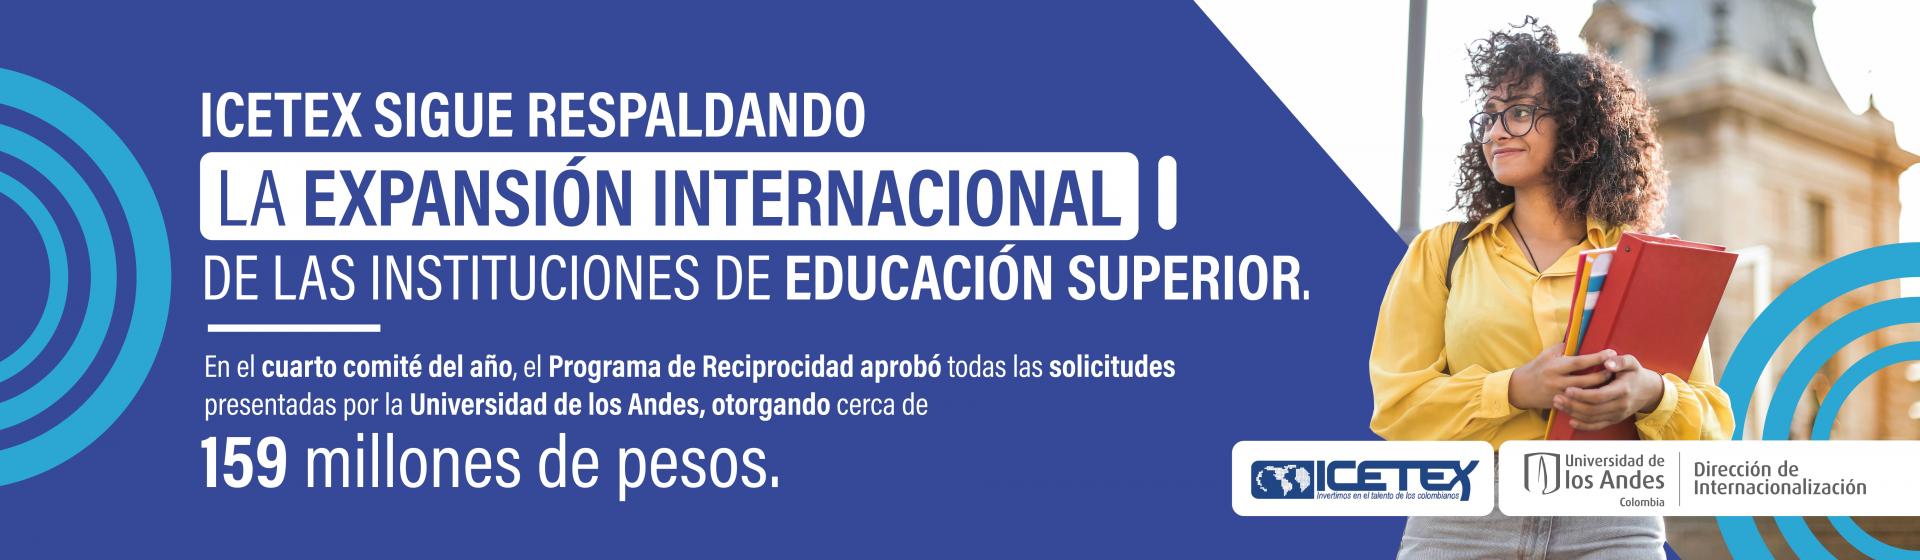 ICETEX y Uniandes, juntos por la internacionalización. 